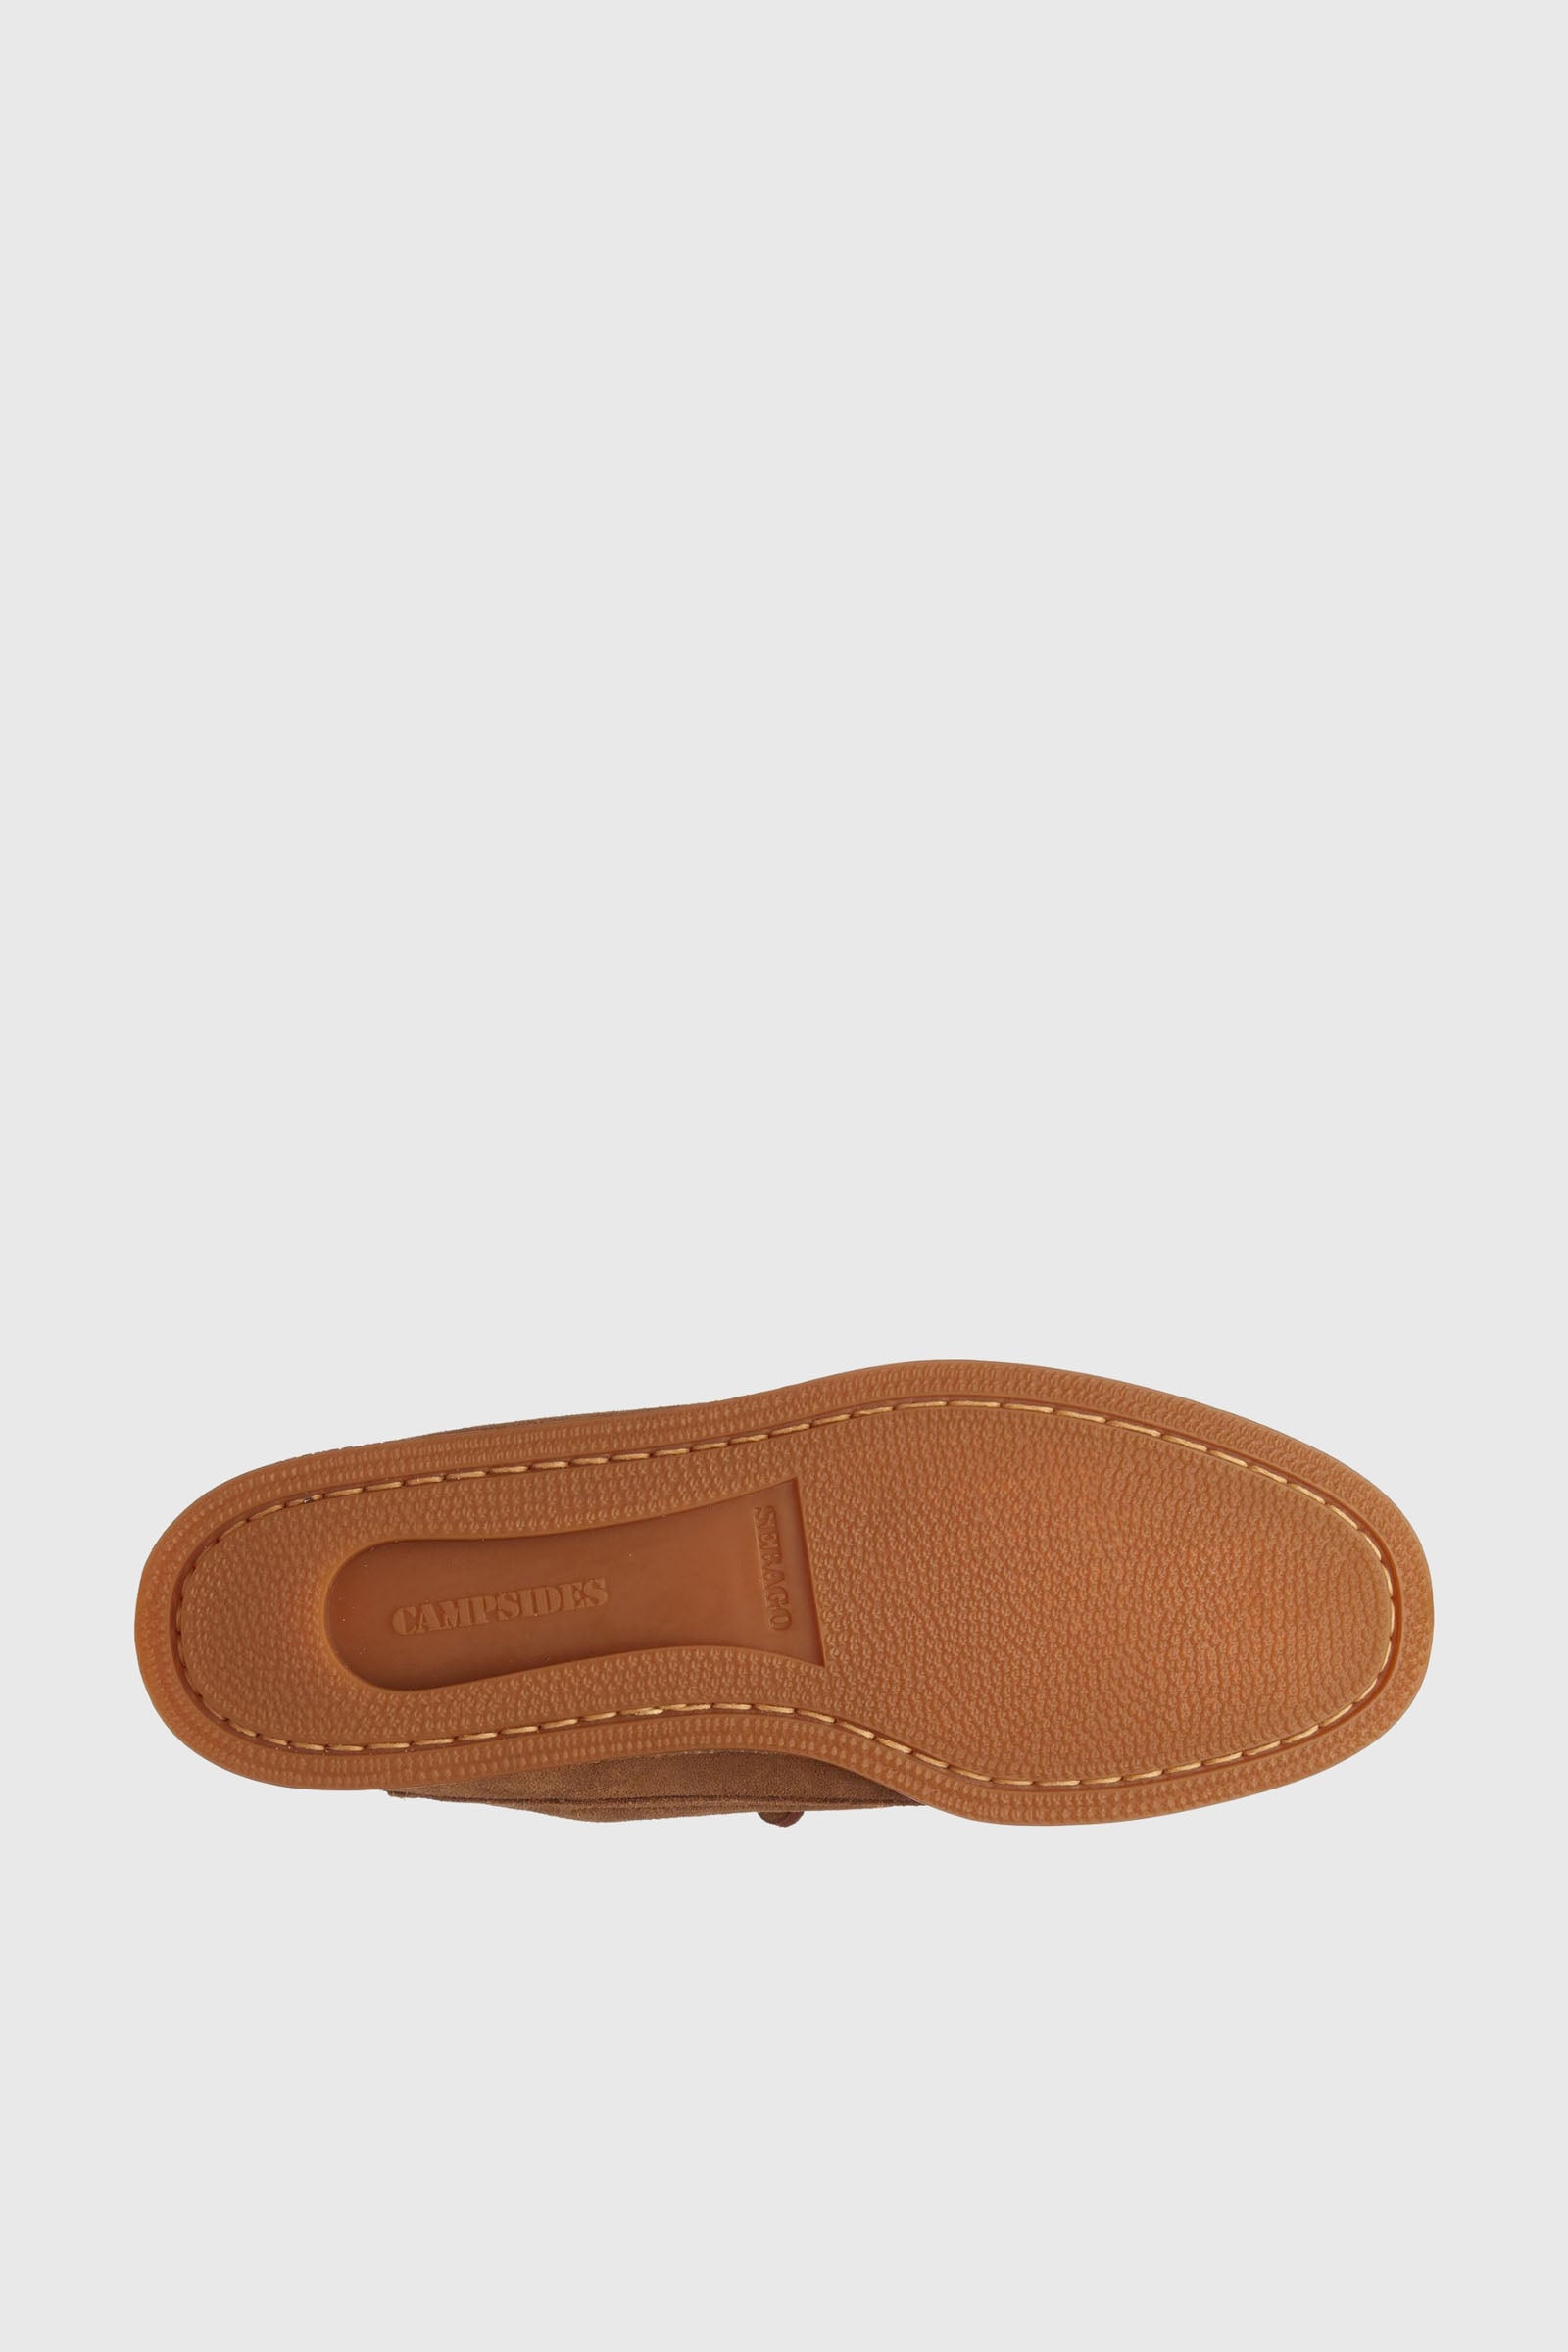 Sebago Loafer Askook Brown Leather - 3